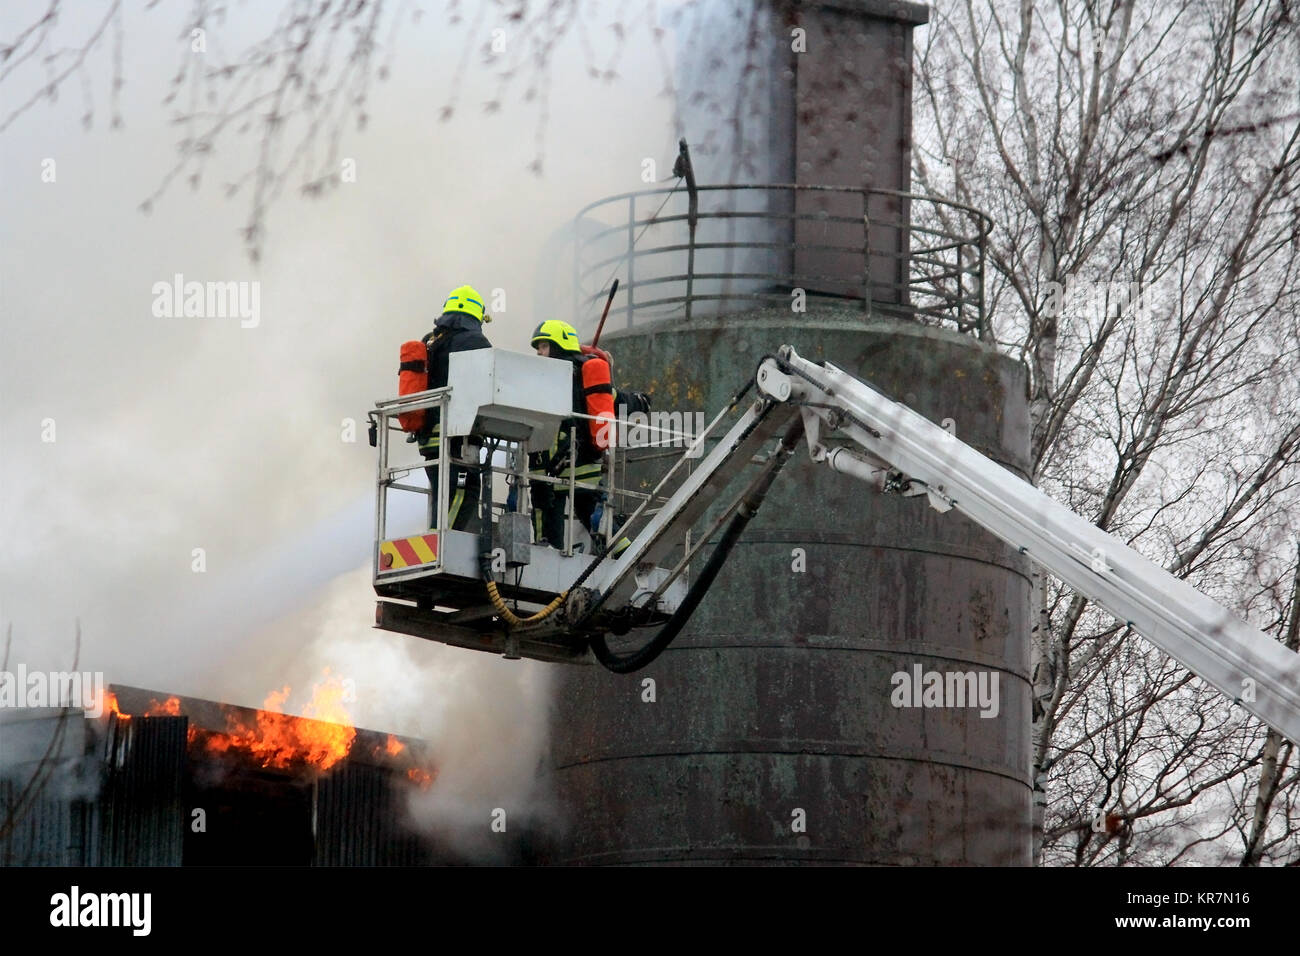 SALO, FINLANDE - le 16 février 2014 : les pompiers éteindre les flammes sur une grue hydraulique plate-forme à l'usine de ciment de Salo, qui éclate dans le feu Banque D'Images